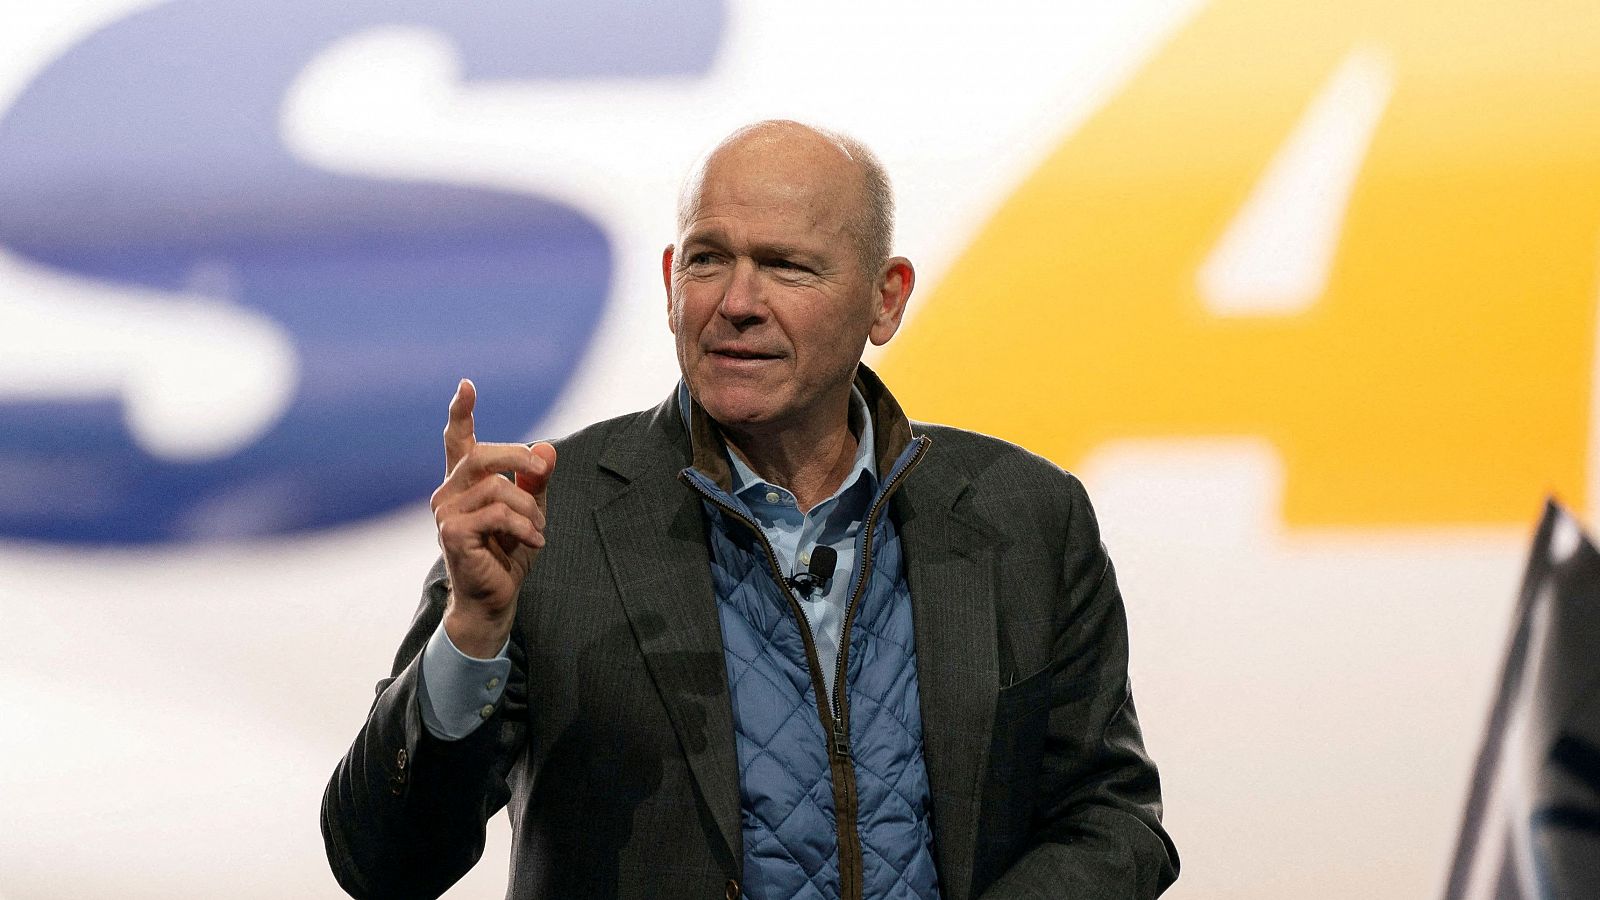 El consejero delegado de Boeing dimite en plena crisis y reesructuración de la empresa